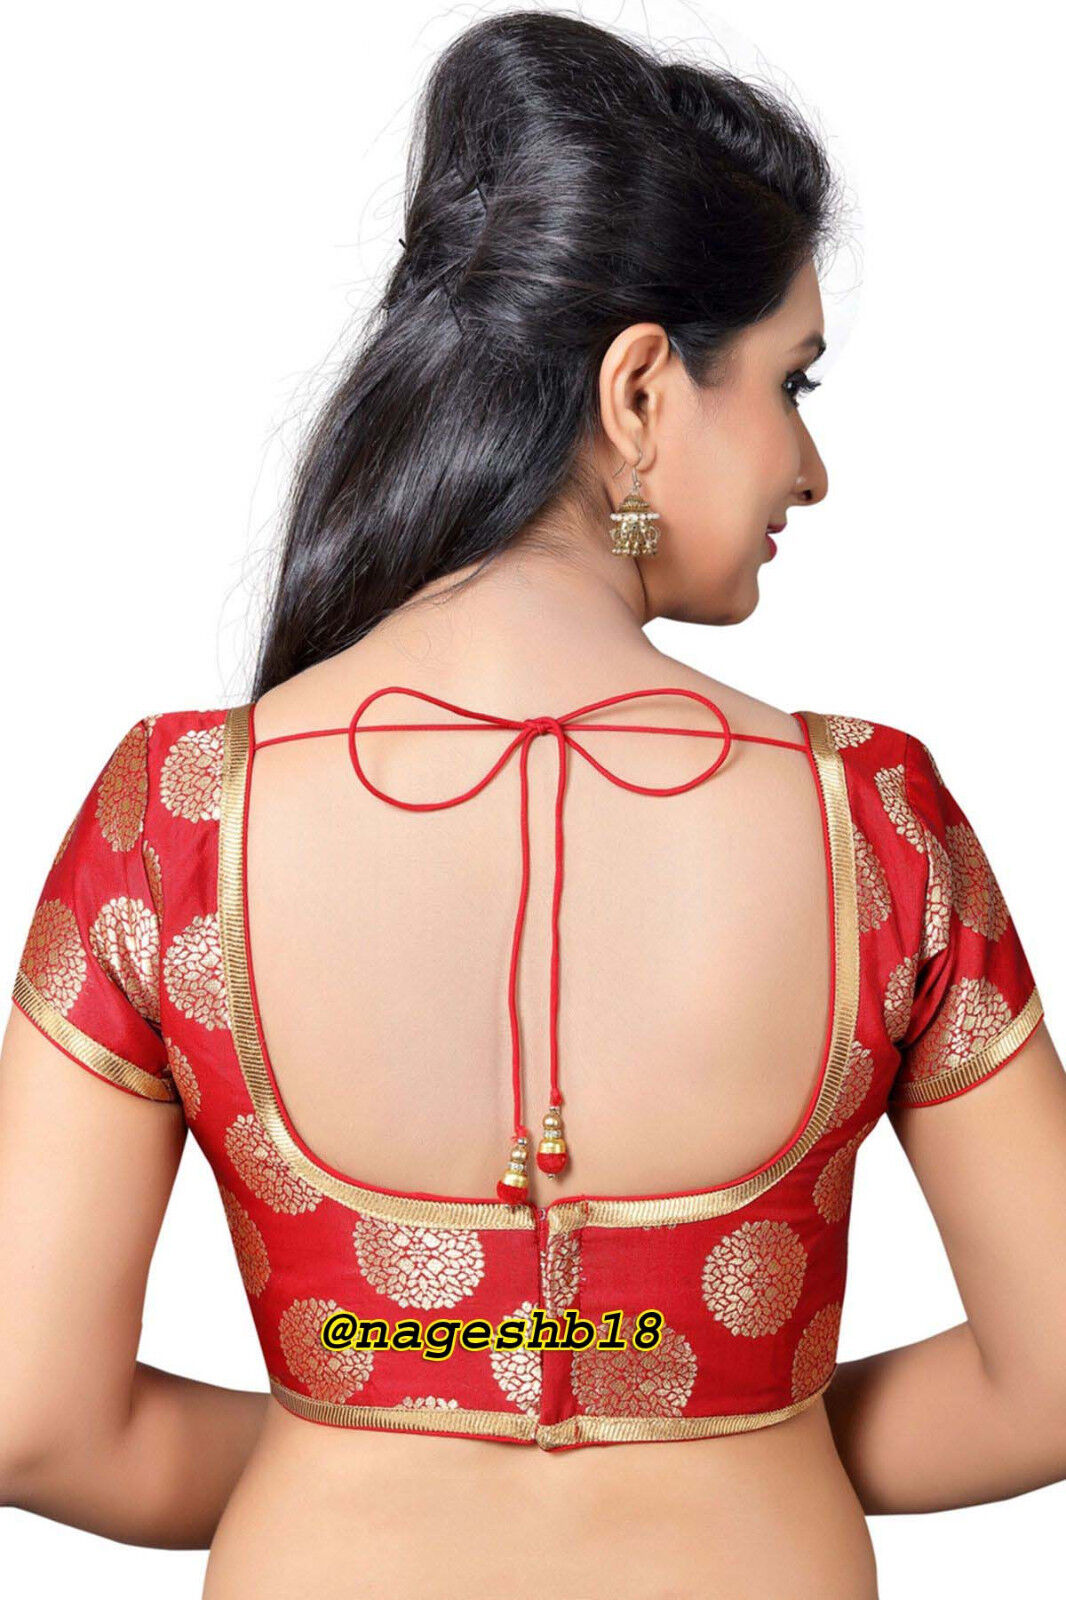 Red Banarasi Silk Blouse, Indian Saree Blouse Readymade Saree Blouse, Indian Saree Blouse, Readymade Sari Blouse, Saree Blouse Traditional Indian Saree Blouse, Ready To Wear Blouse, Indian Blouse